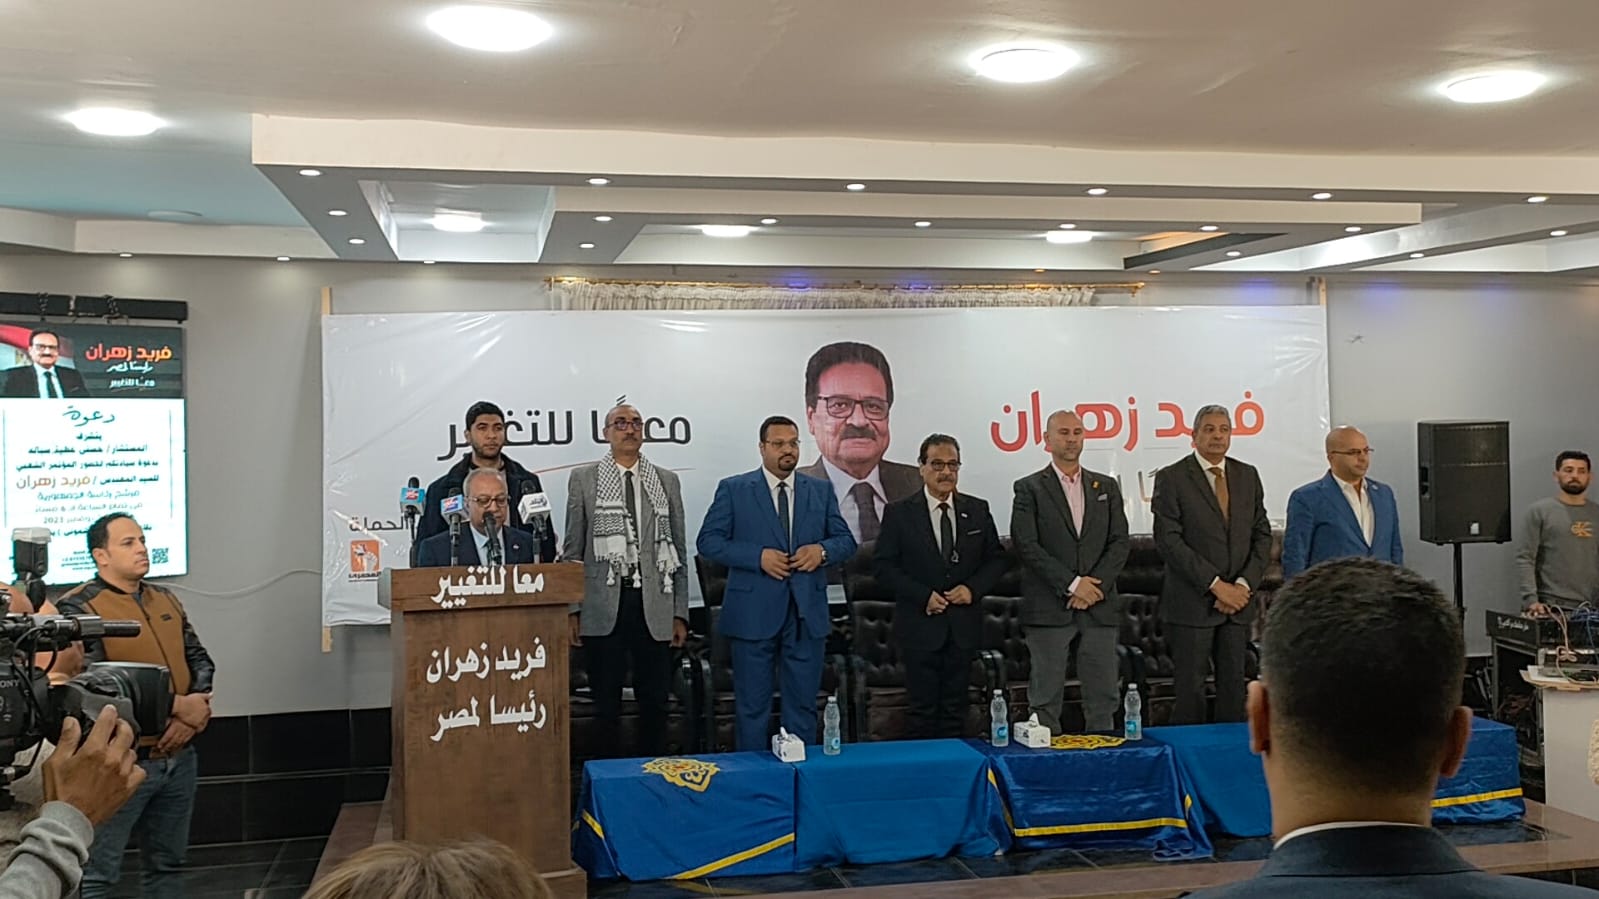  المؤتمر الإنتخابي للمرشح الرئاسي فريد زهران  (2)